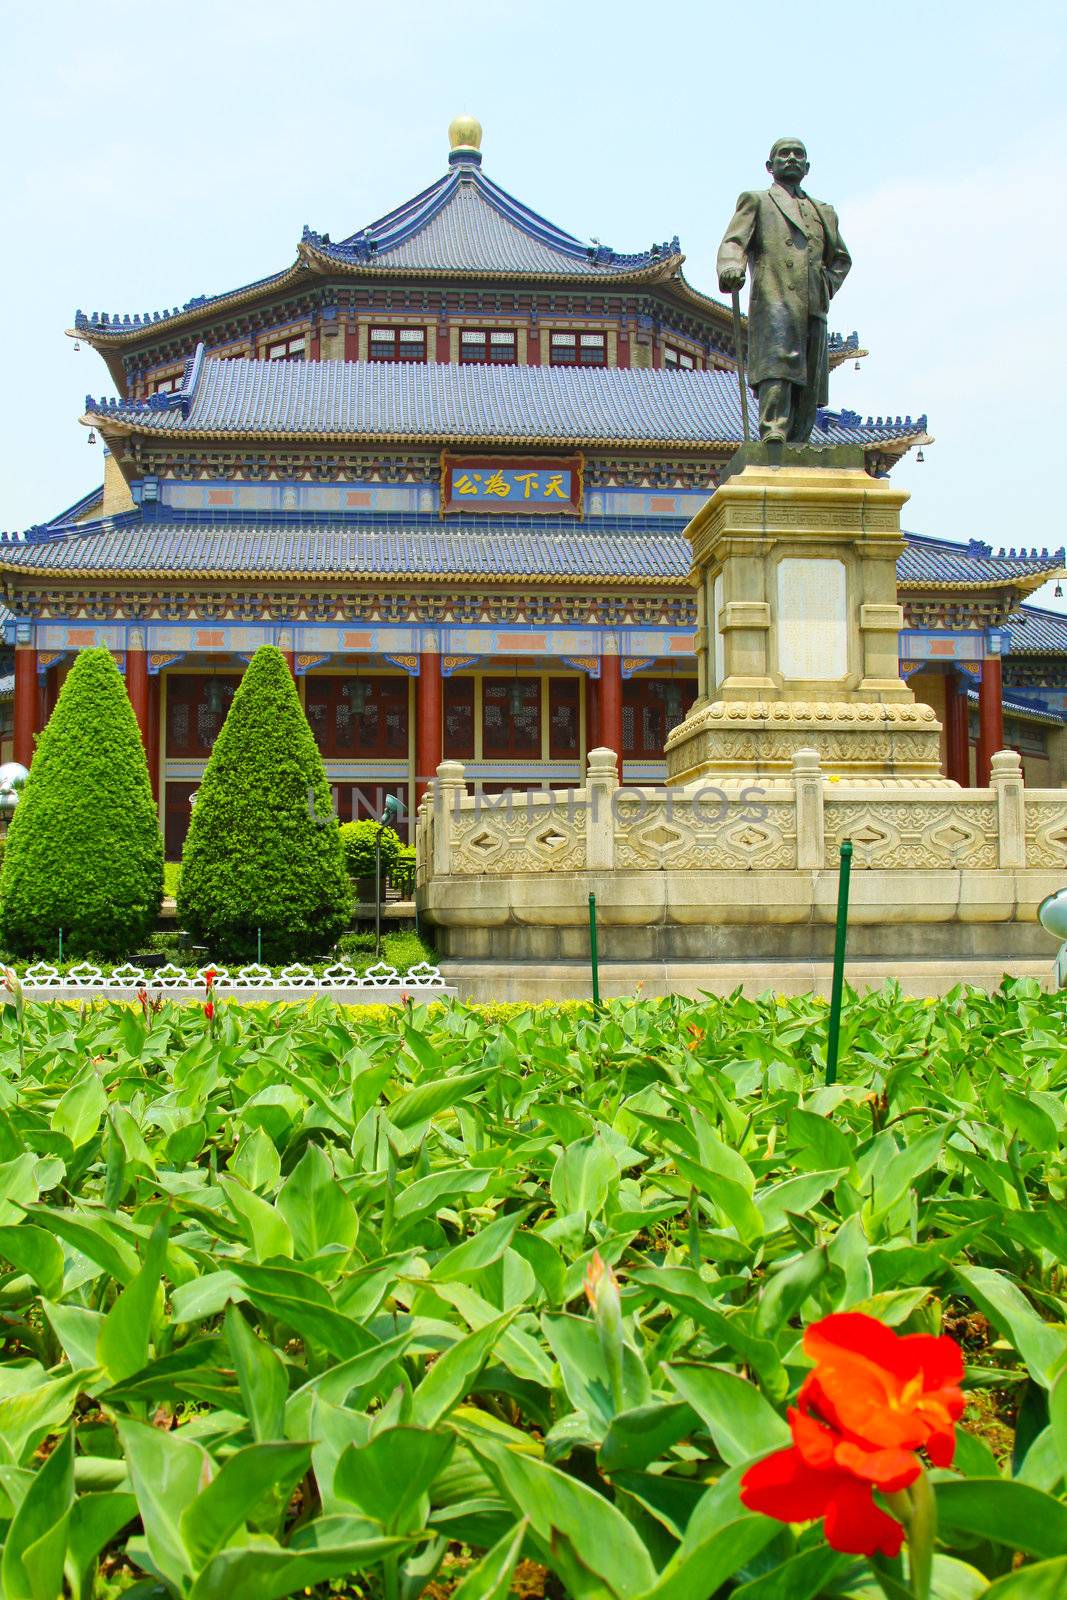 The Sun Yat-Sen Memorial Hall in Guangzhou, China.